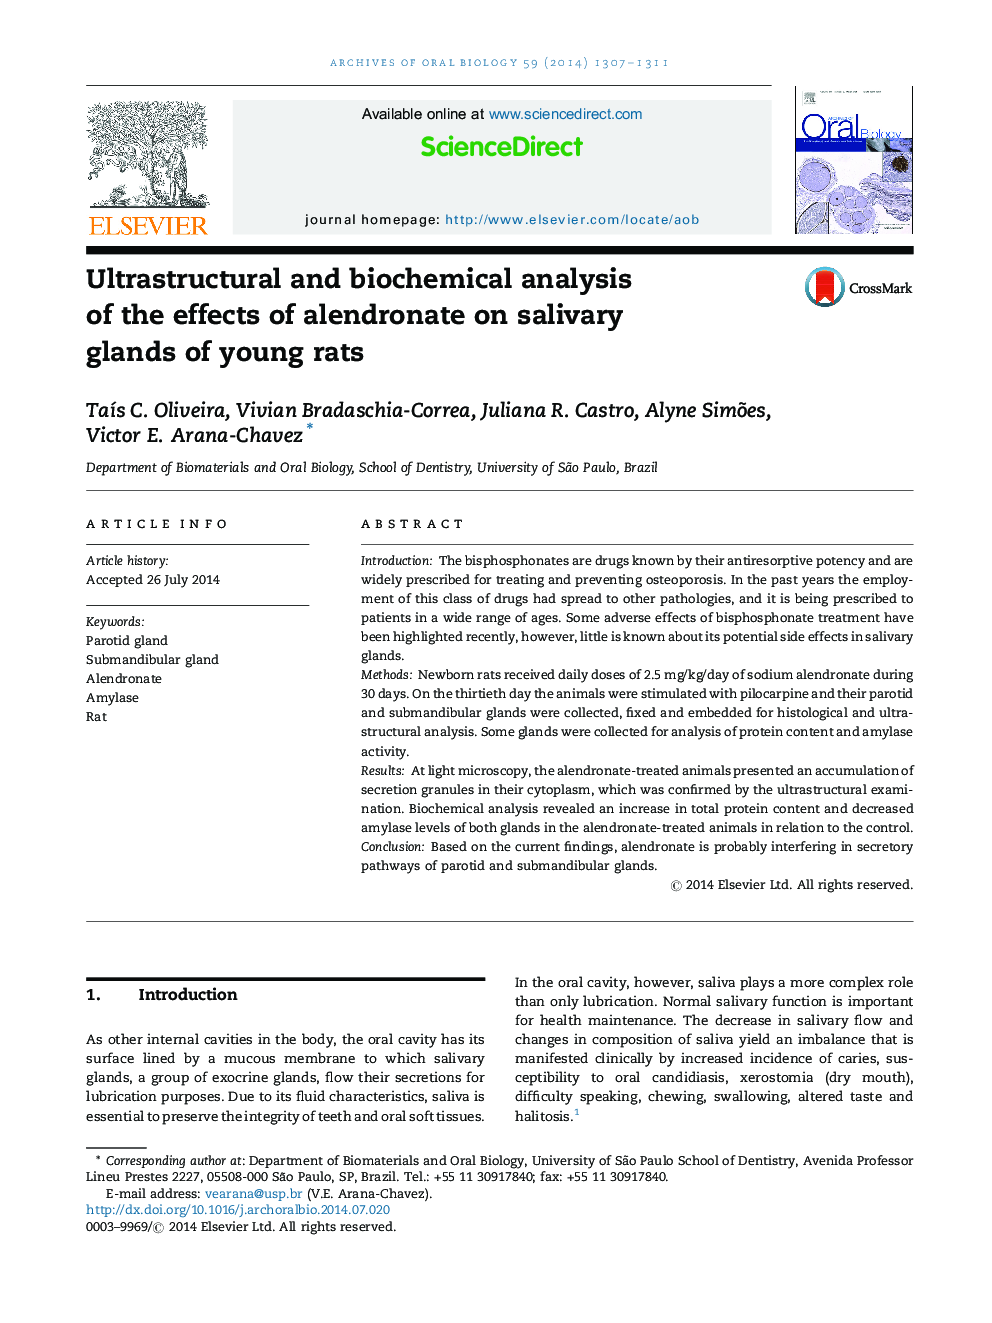 تجزیه و تحلیل فراوانی و بیوشیمیایی اثرات آلندرونات بر غدد بزاقی موش های جوان 